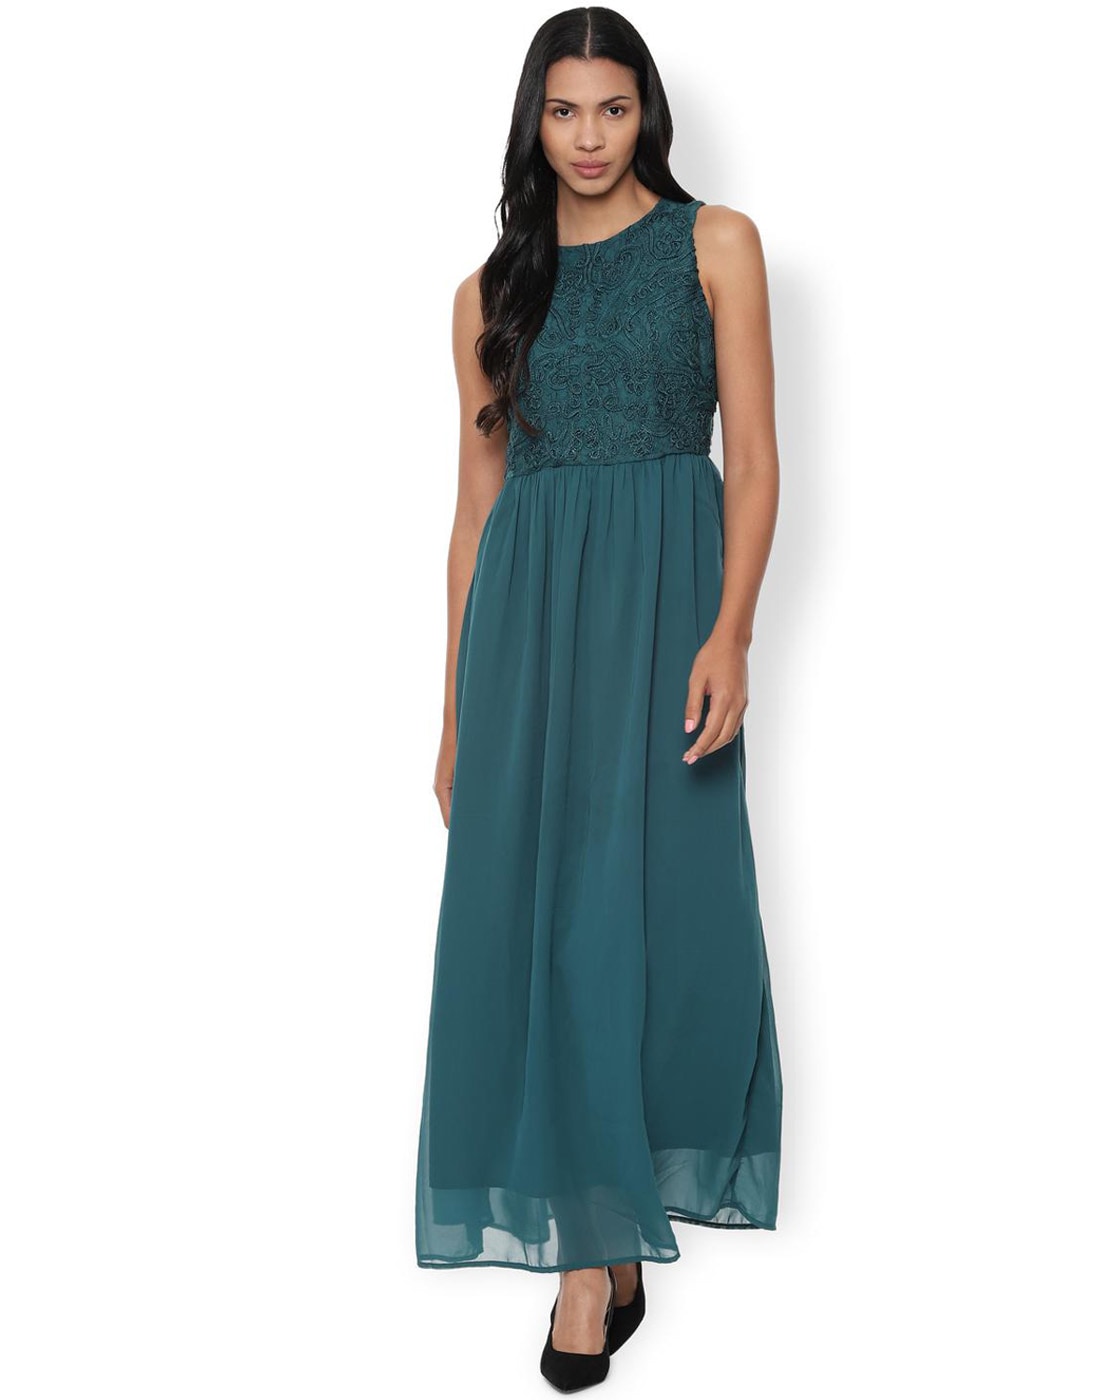 Buy Teal Blue Dresses for Women by VAN 